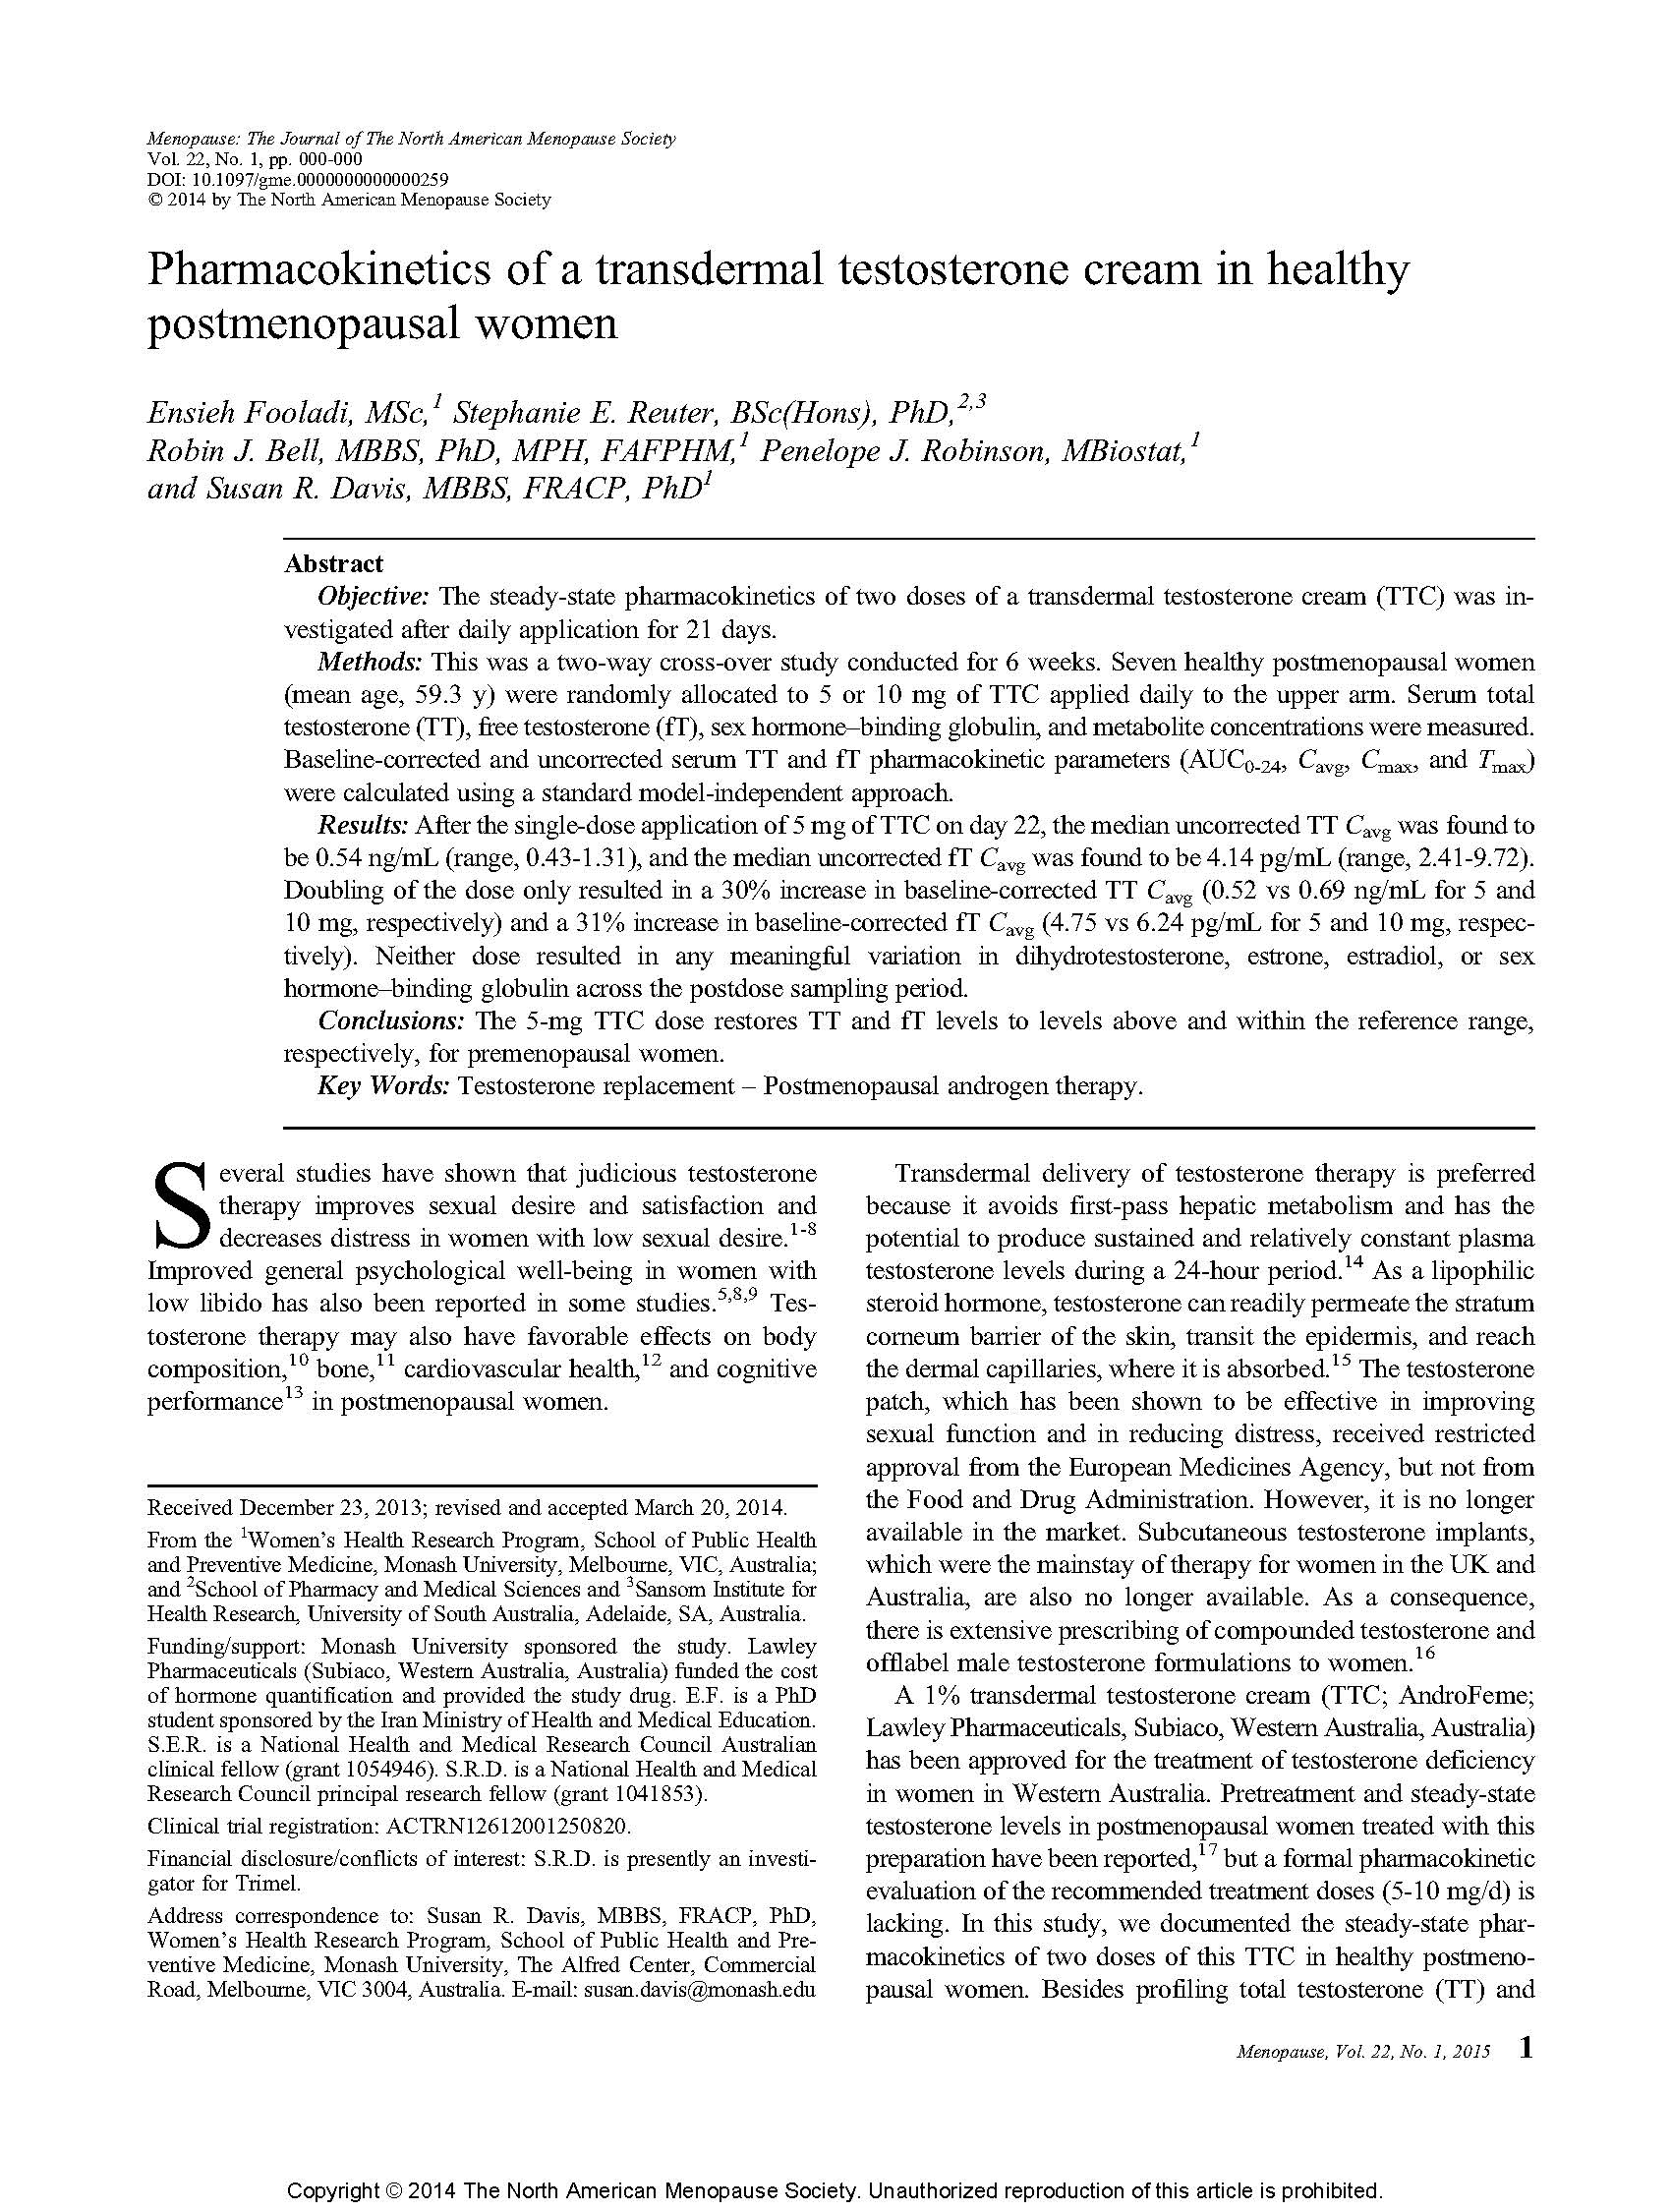 Pharmacokinetics of a transdermal testosterone cream in healthy postmenopausal women